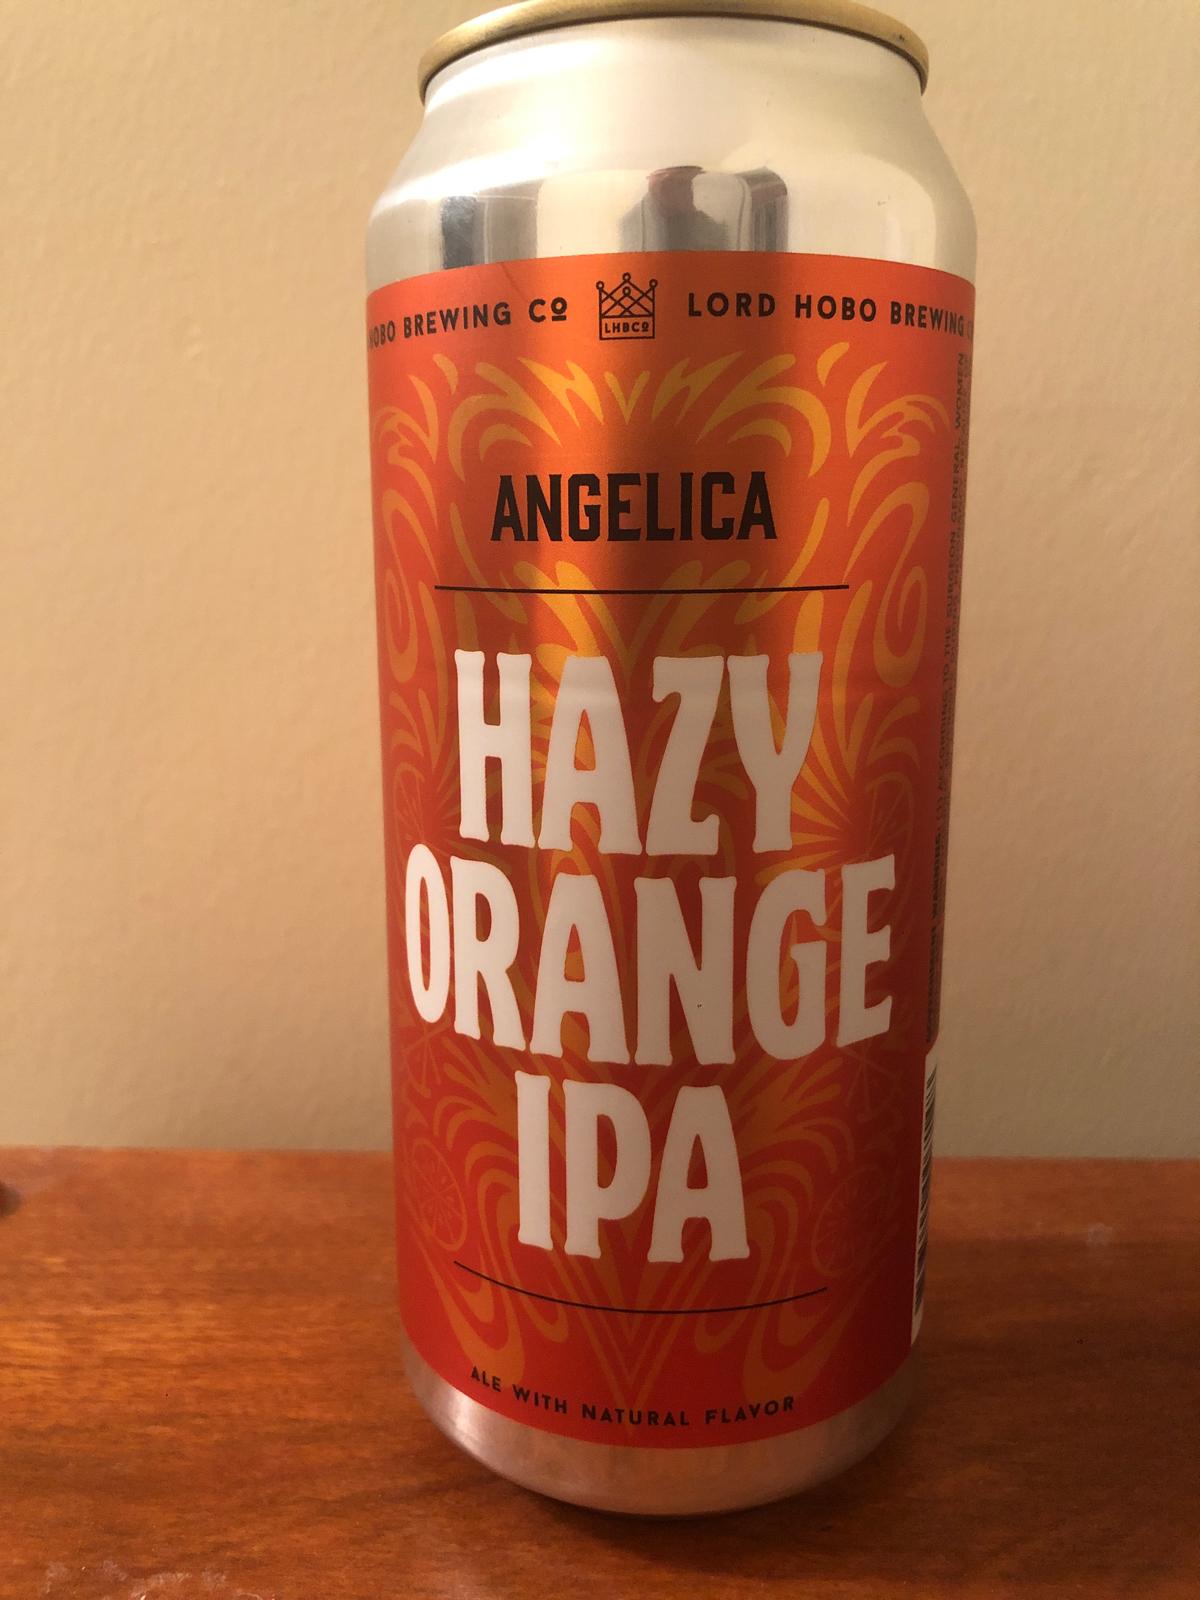 Angelica Hazy Orange IPA